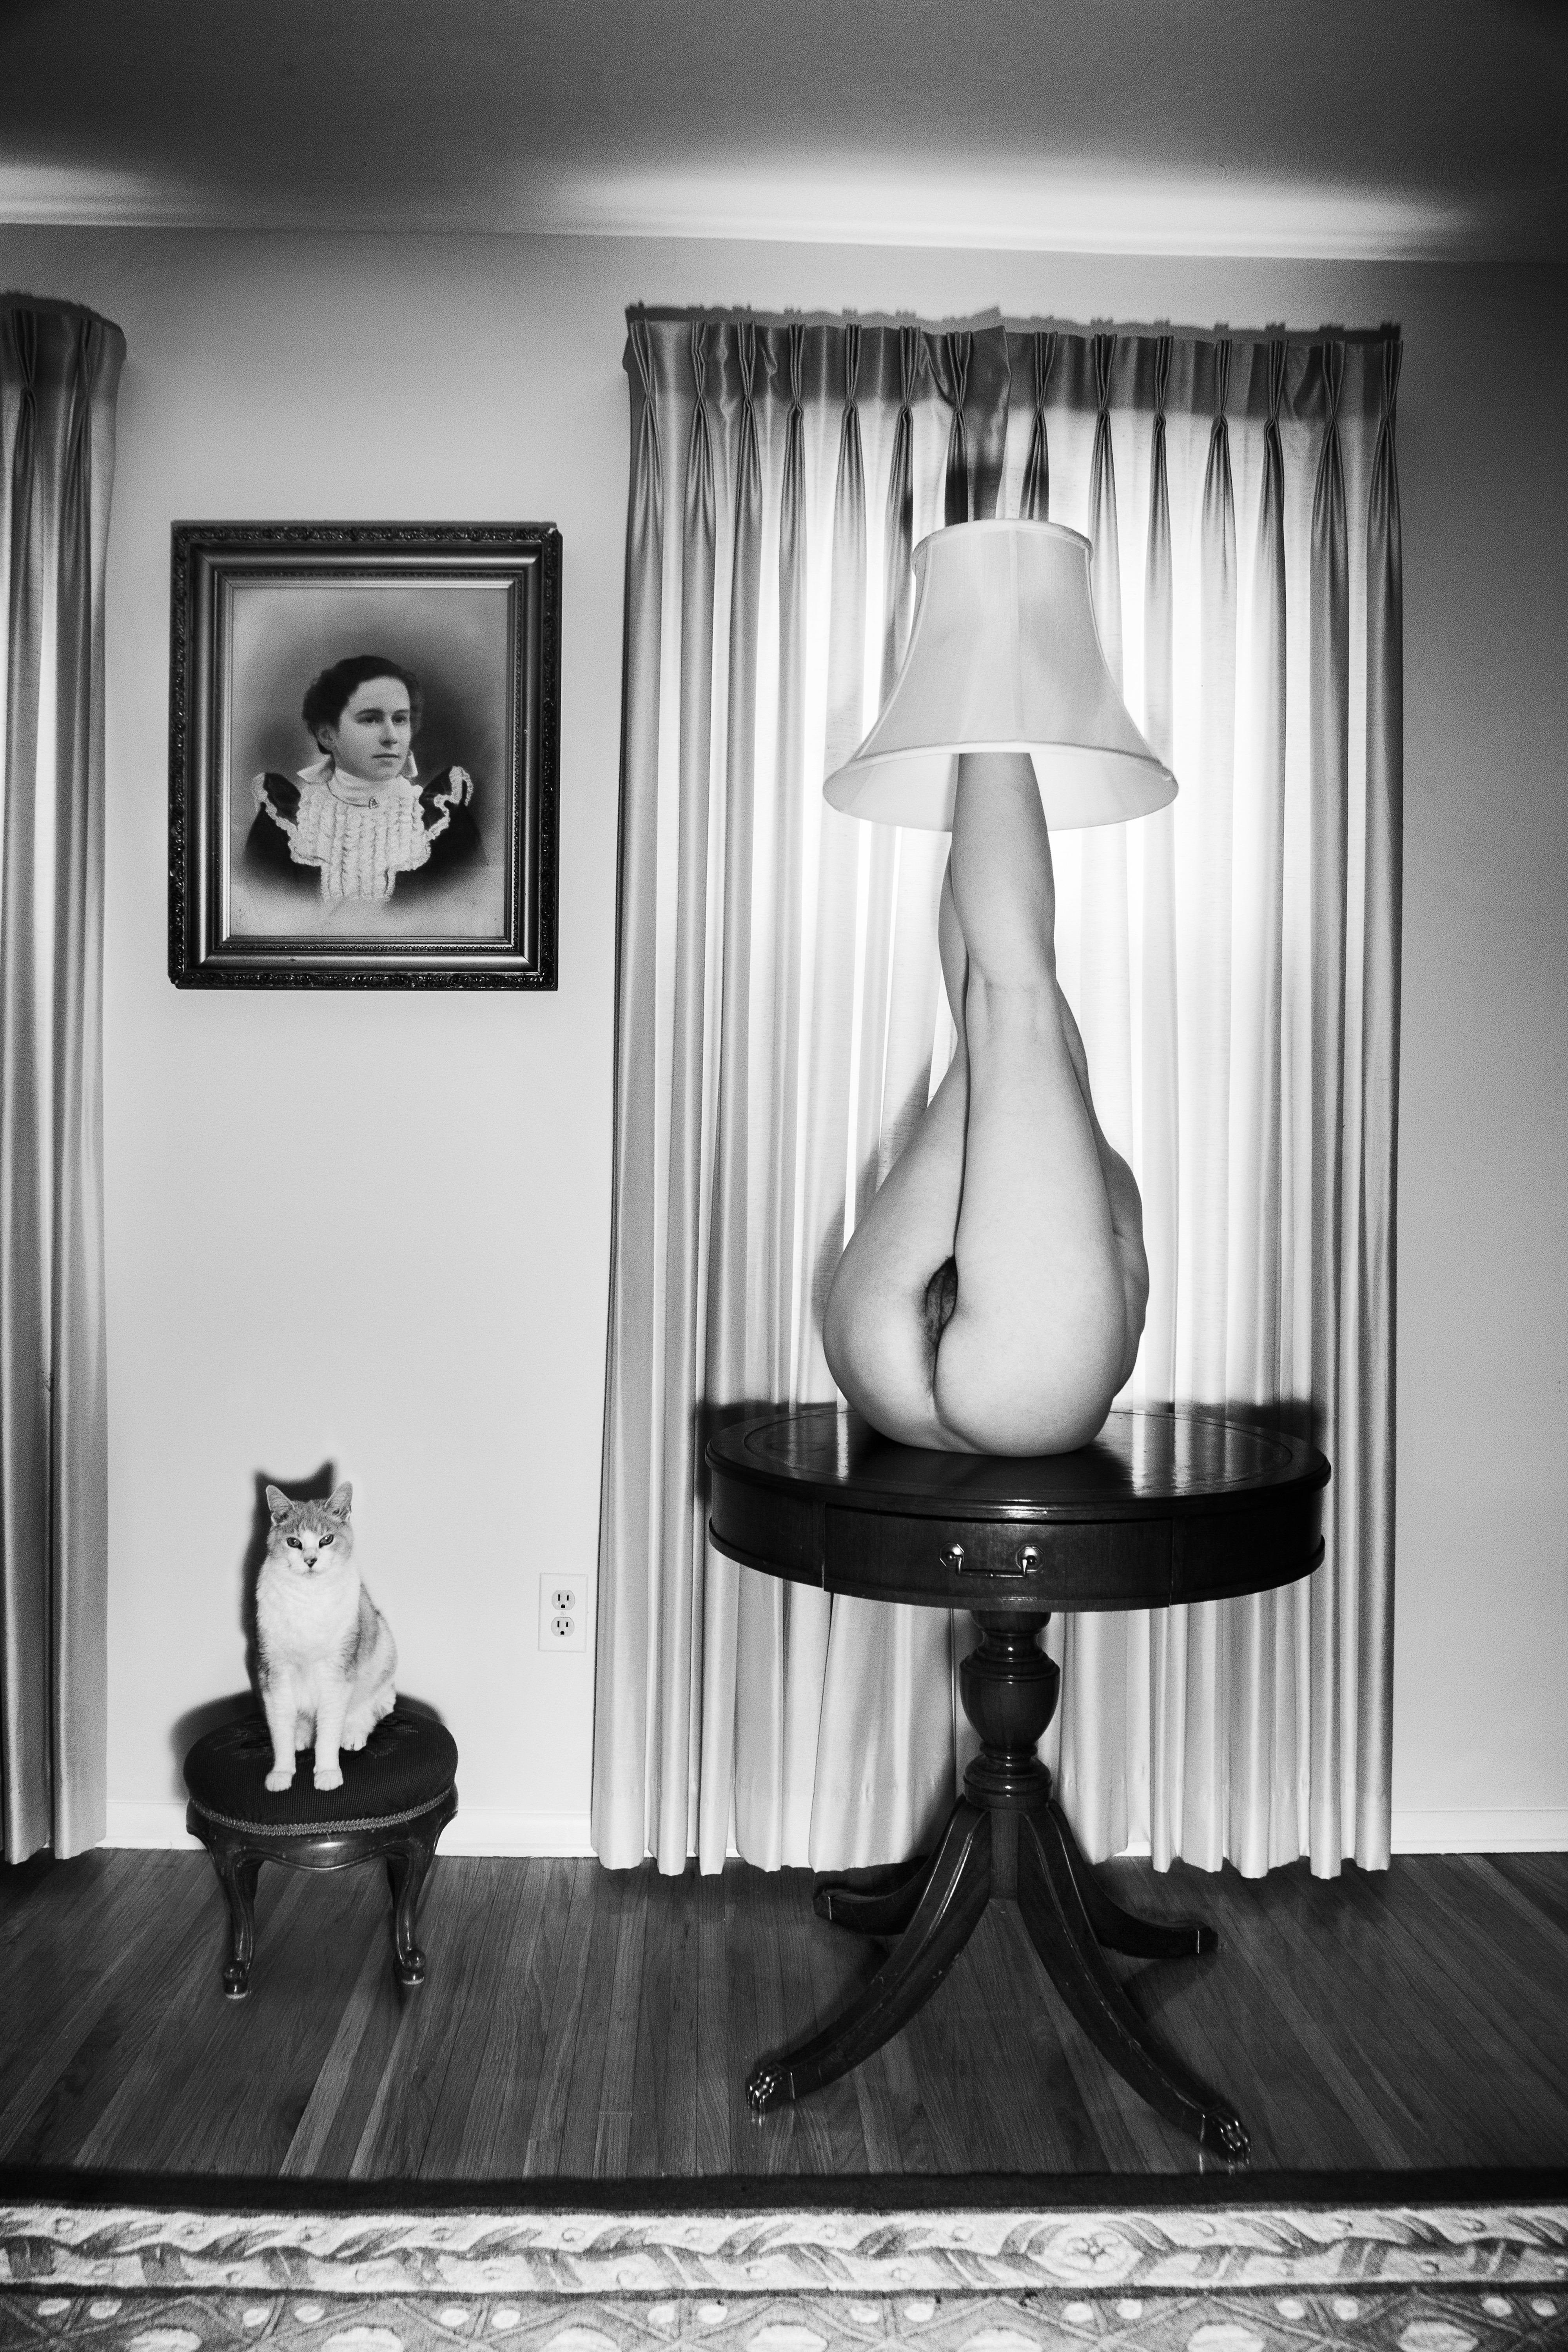 Loreal  Prystaj Black and White Photograph – Lampenschirm, Bilderrahmen und meine Pussy-cat